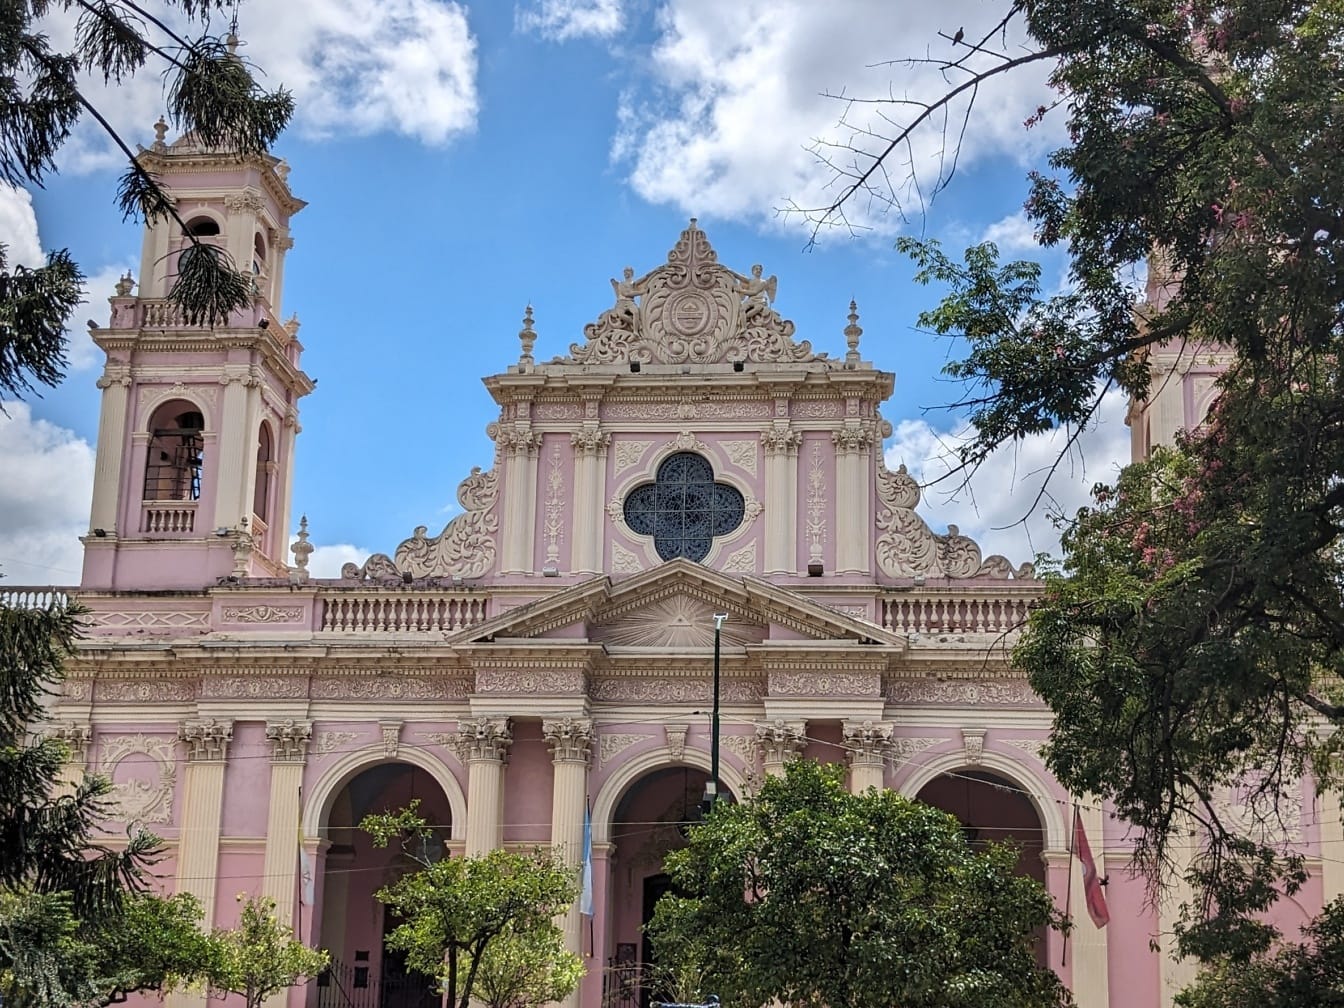 Saltan katedraali kaupungin puistossa, aukiolla, jota kutsutaan aukioksi 9. heinäkuuta Argentiinassa